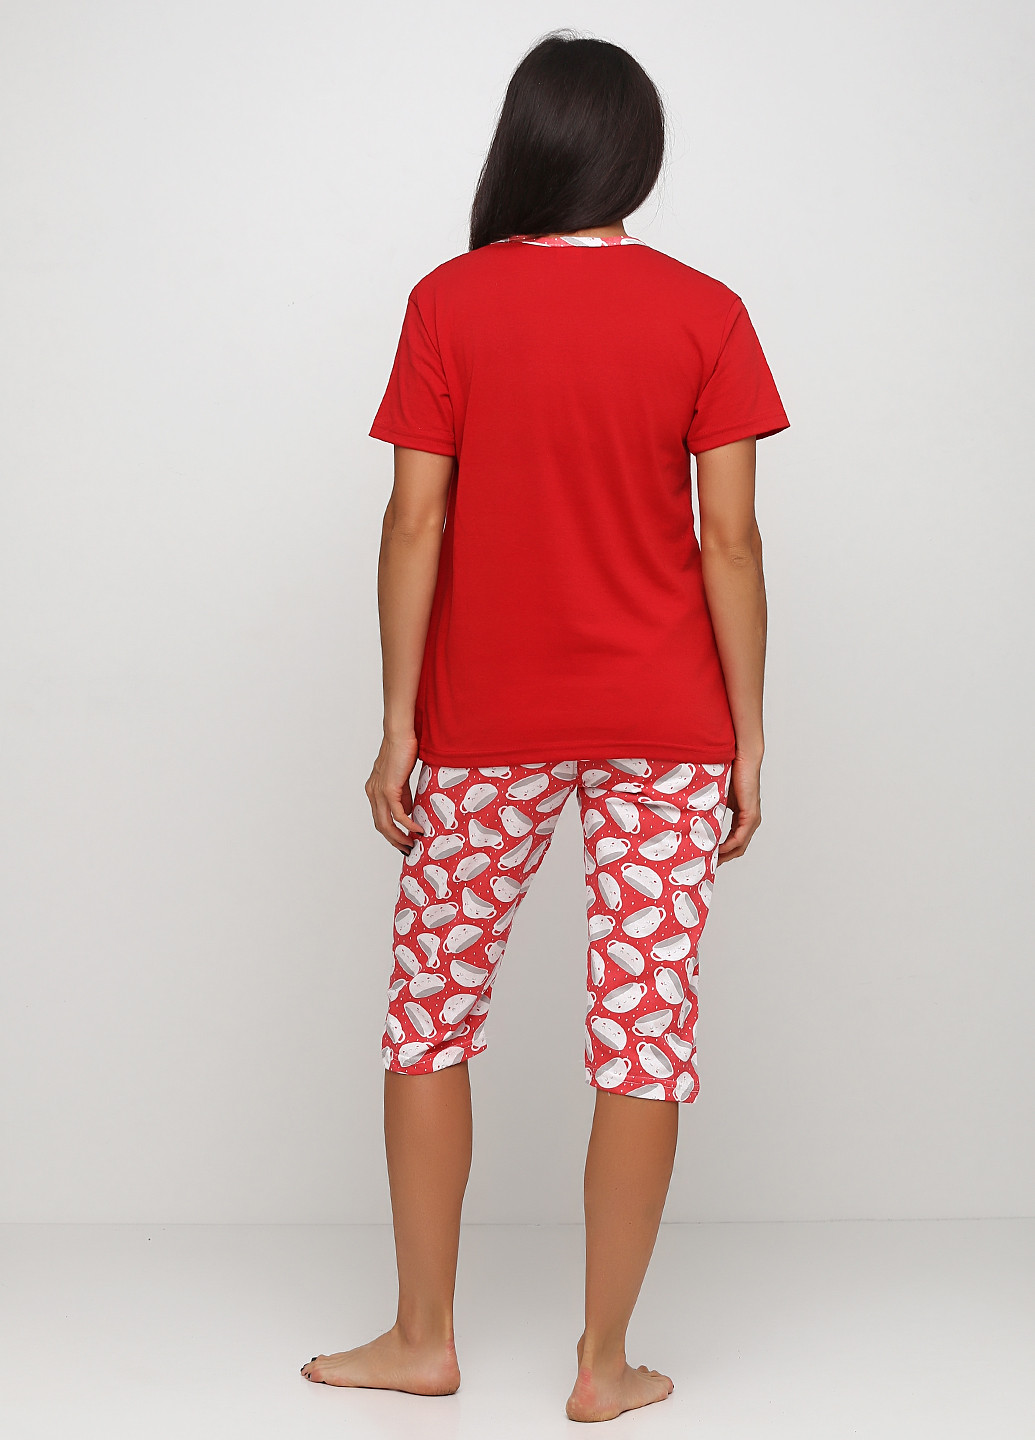 Красная всесезон пижама (футболка, бриджи) футболка + бриджи Adalya